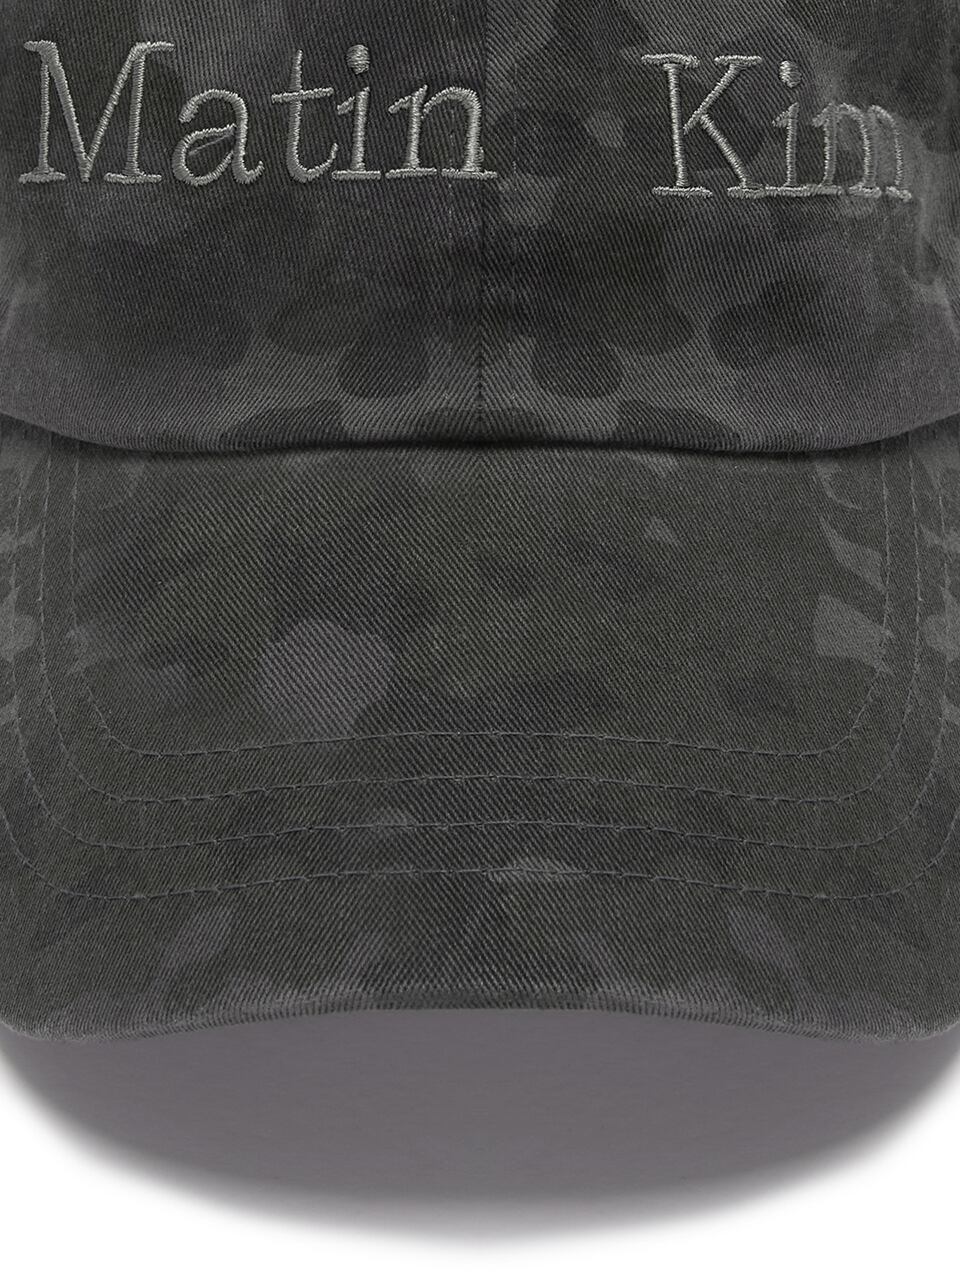 Matin Kim] MATIN CAMOUFLAGE CAP IN CHARCOAL 正規品 韓国ブランド